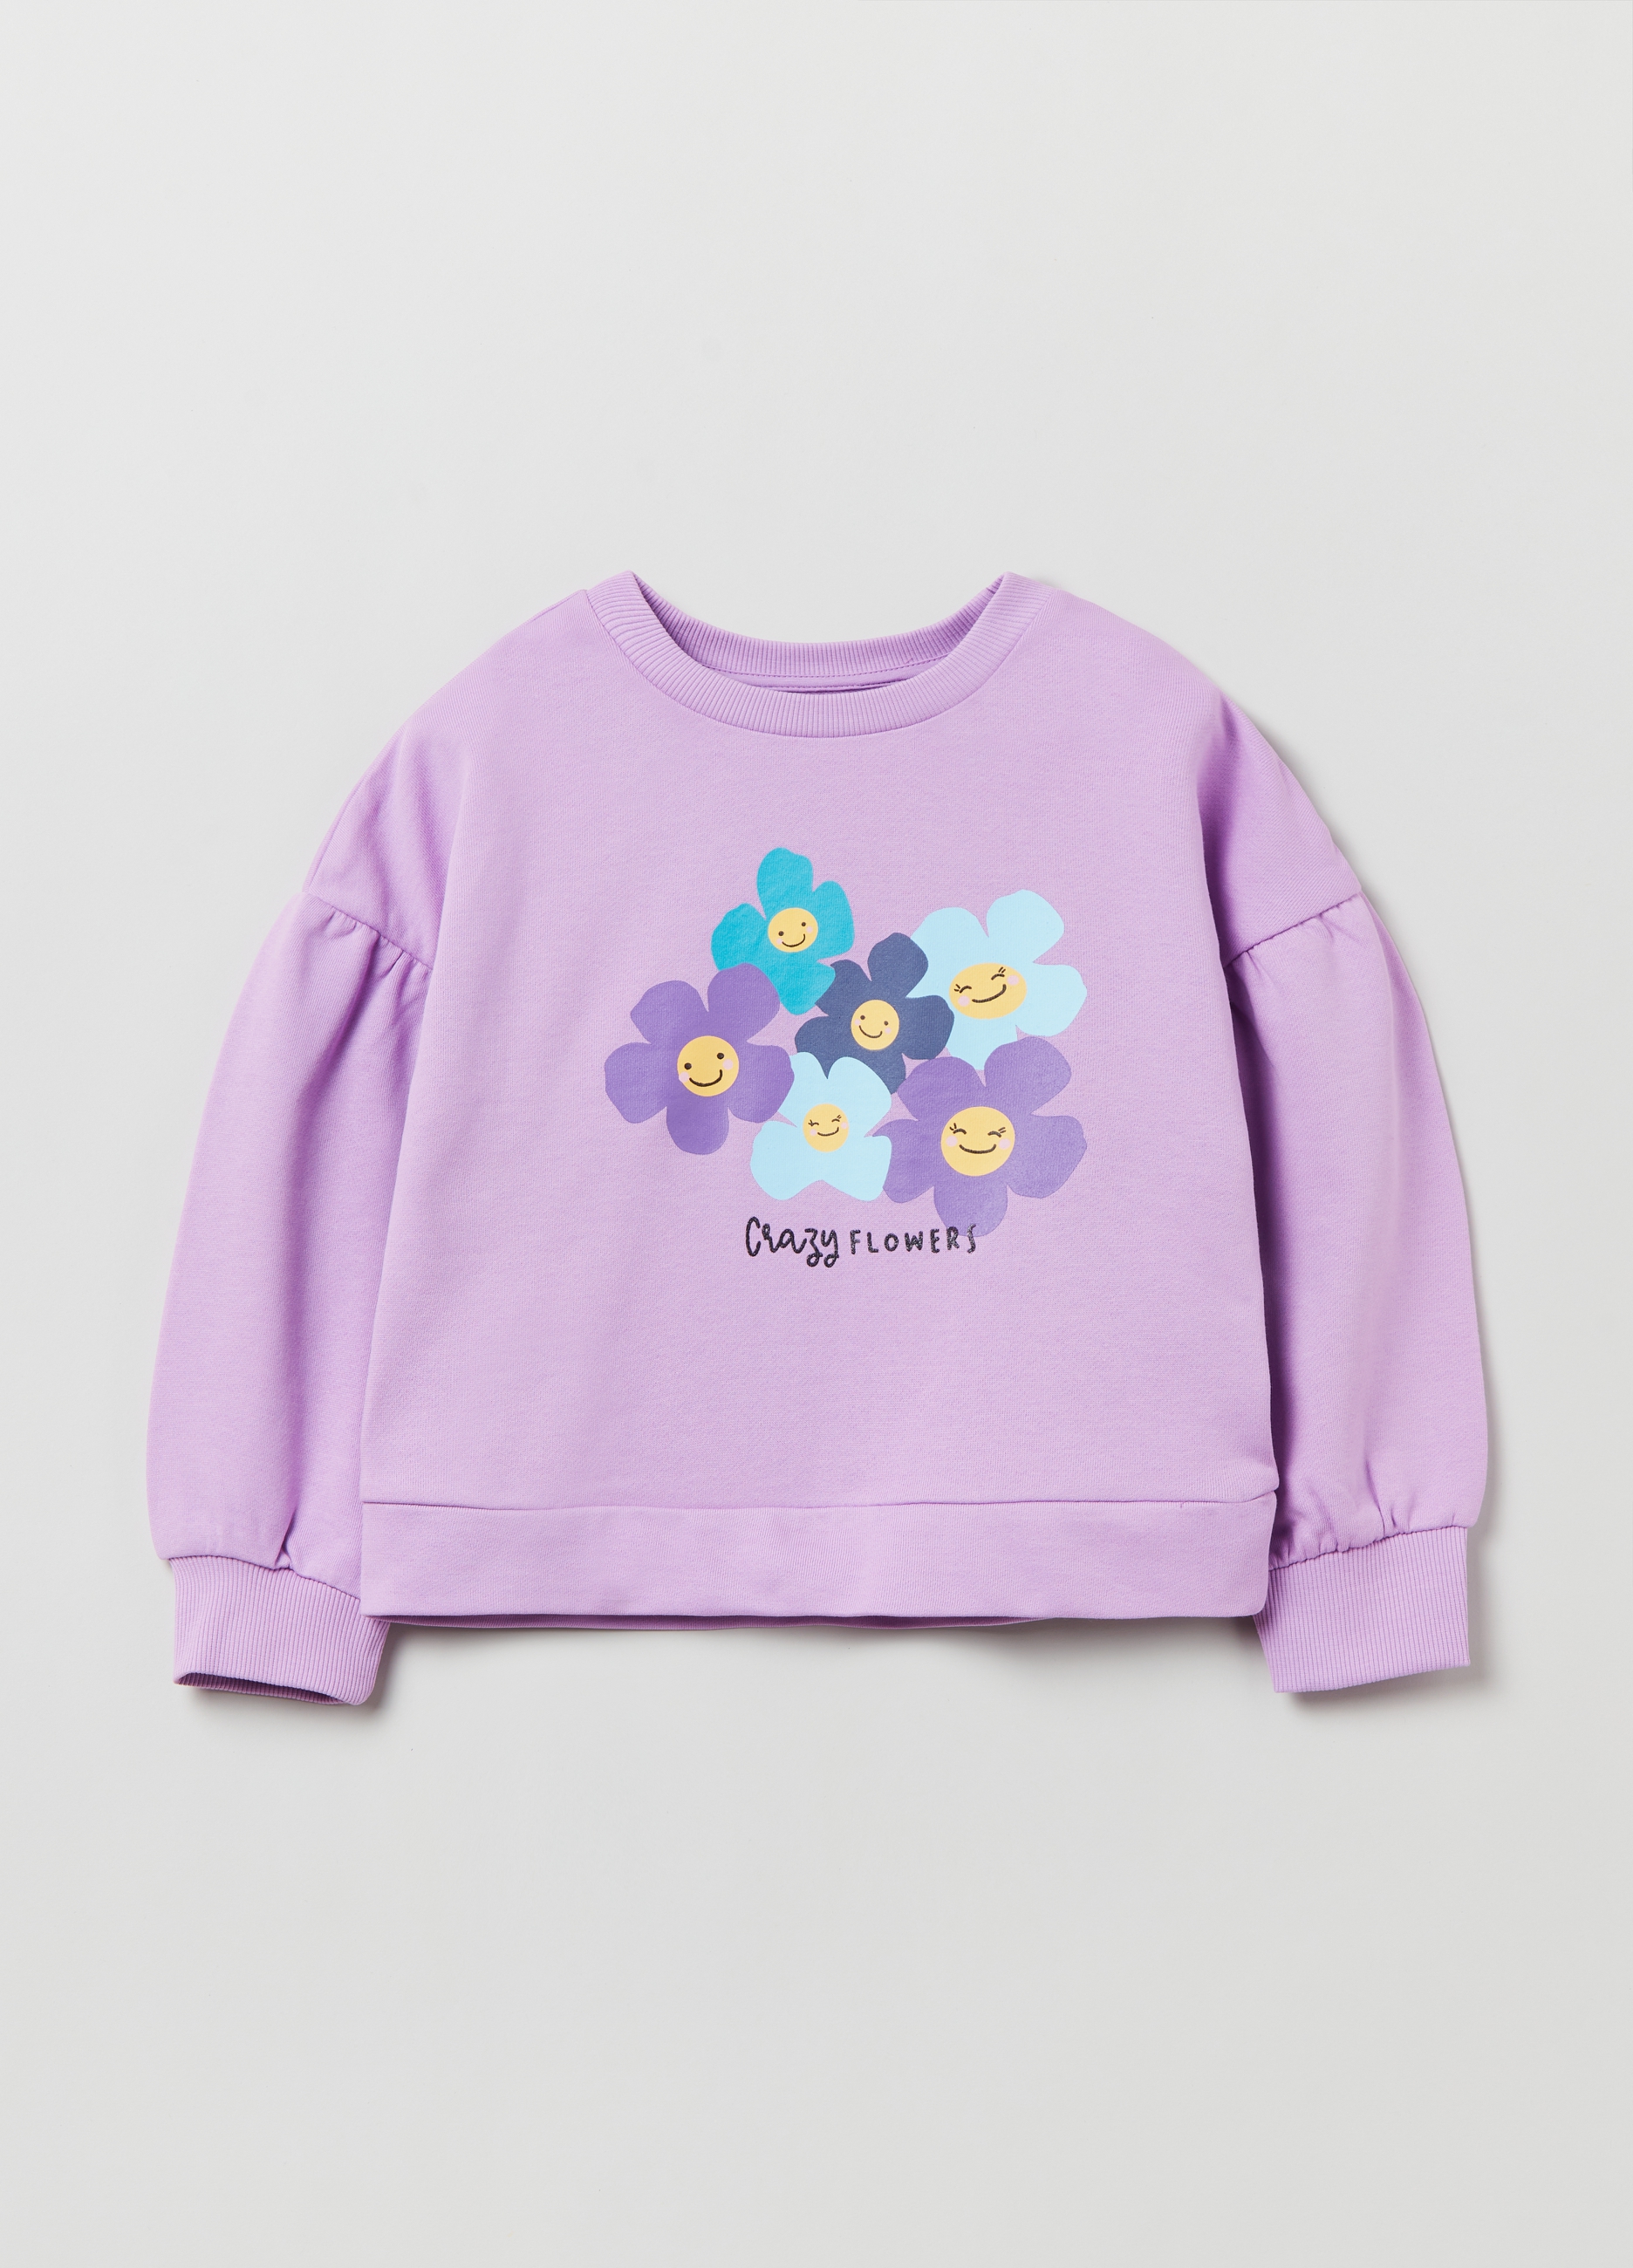 Фуфайка OVS для девочек, фиолетовая, 5-6 лет, 1893089 комплект для девочек фуфайка трикотажная футболка брюки текстильные